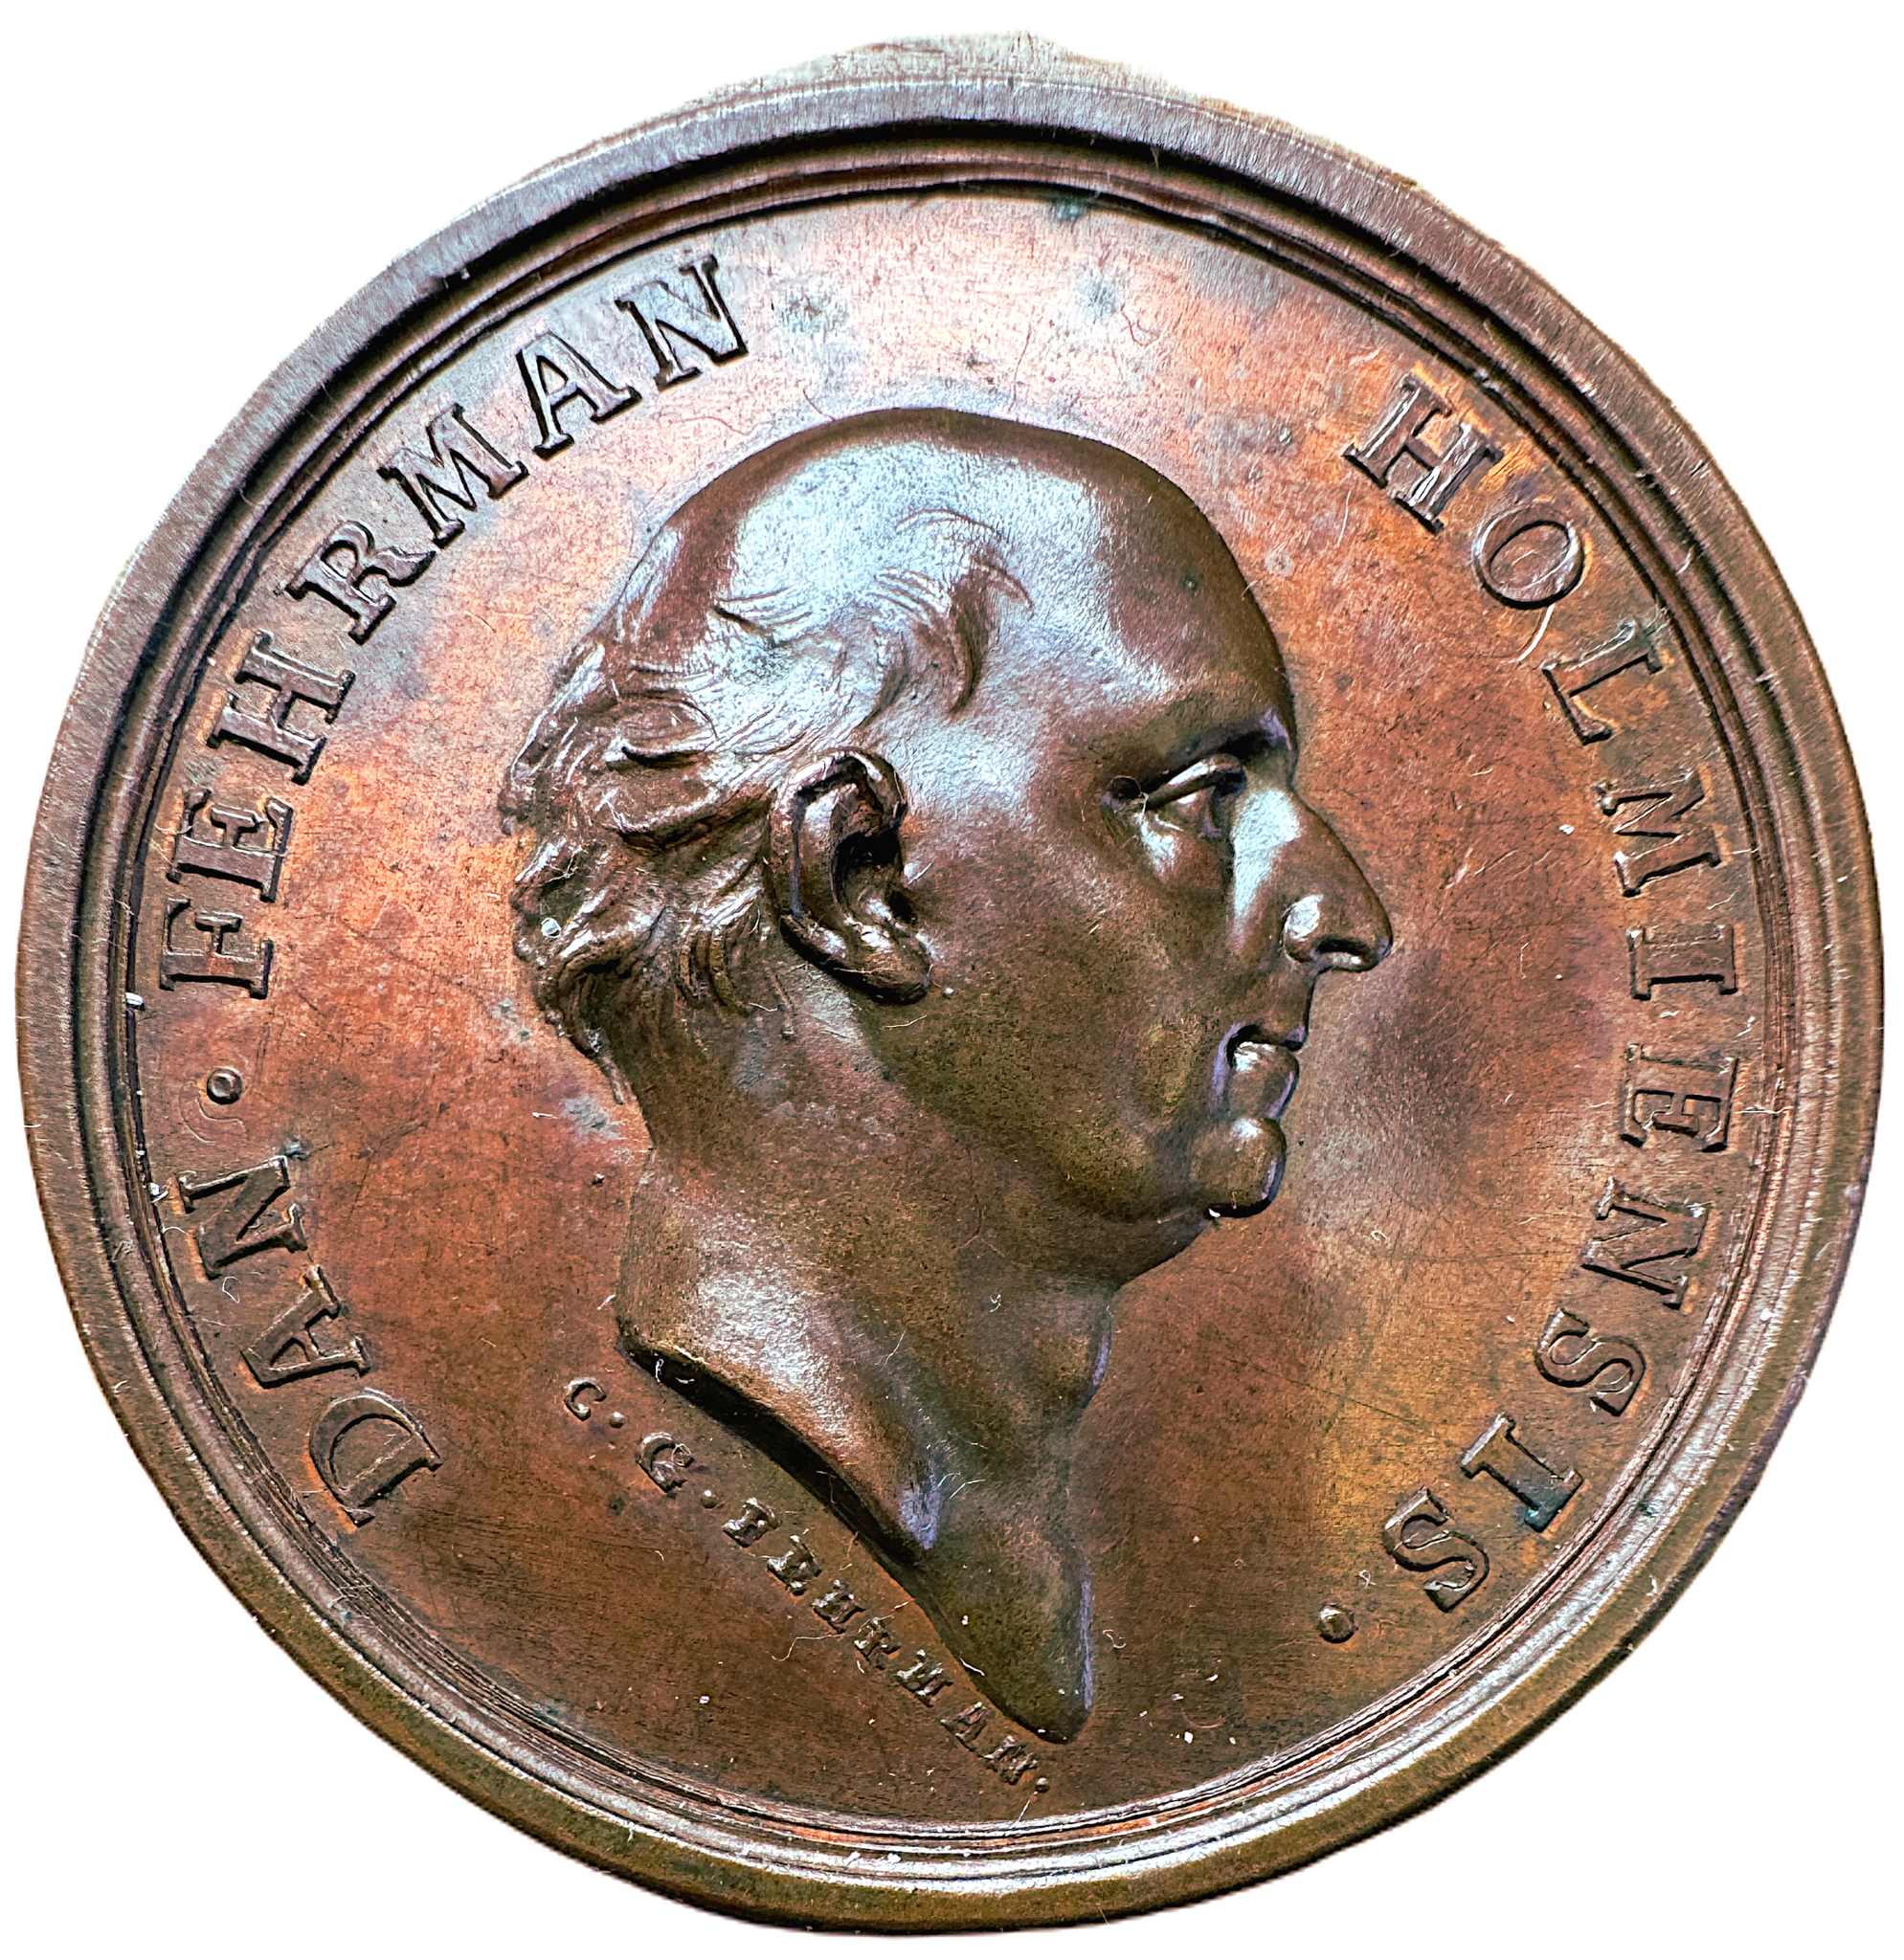 En underbar dynastisk medalj - Daniel Fehrman (1710-1780) graverad av sonen Carl Gustaf Fehrman 1783 - Mycket sällsynt